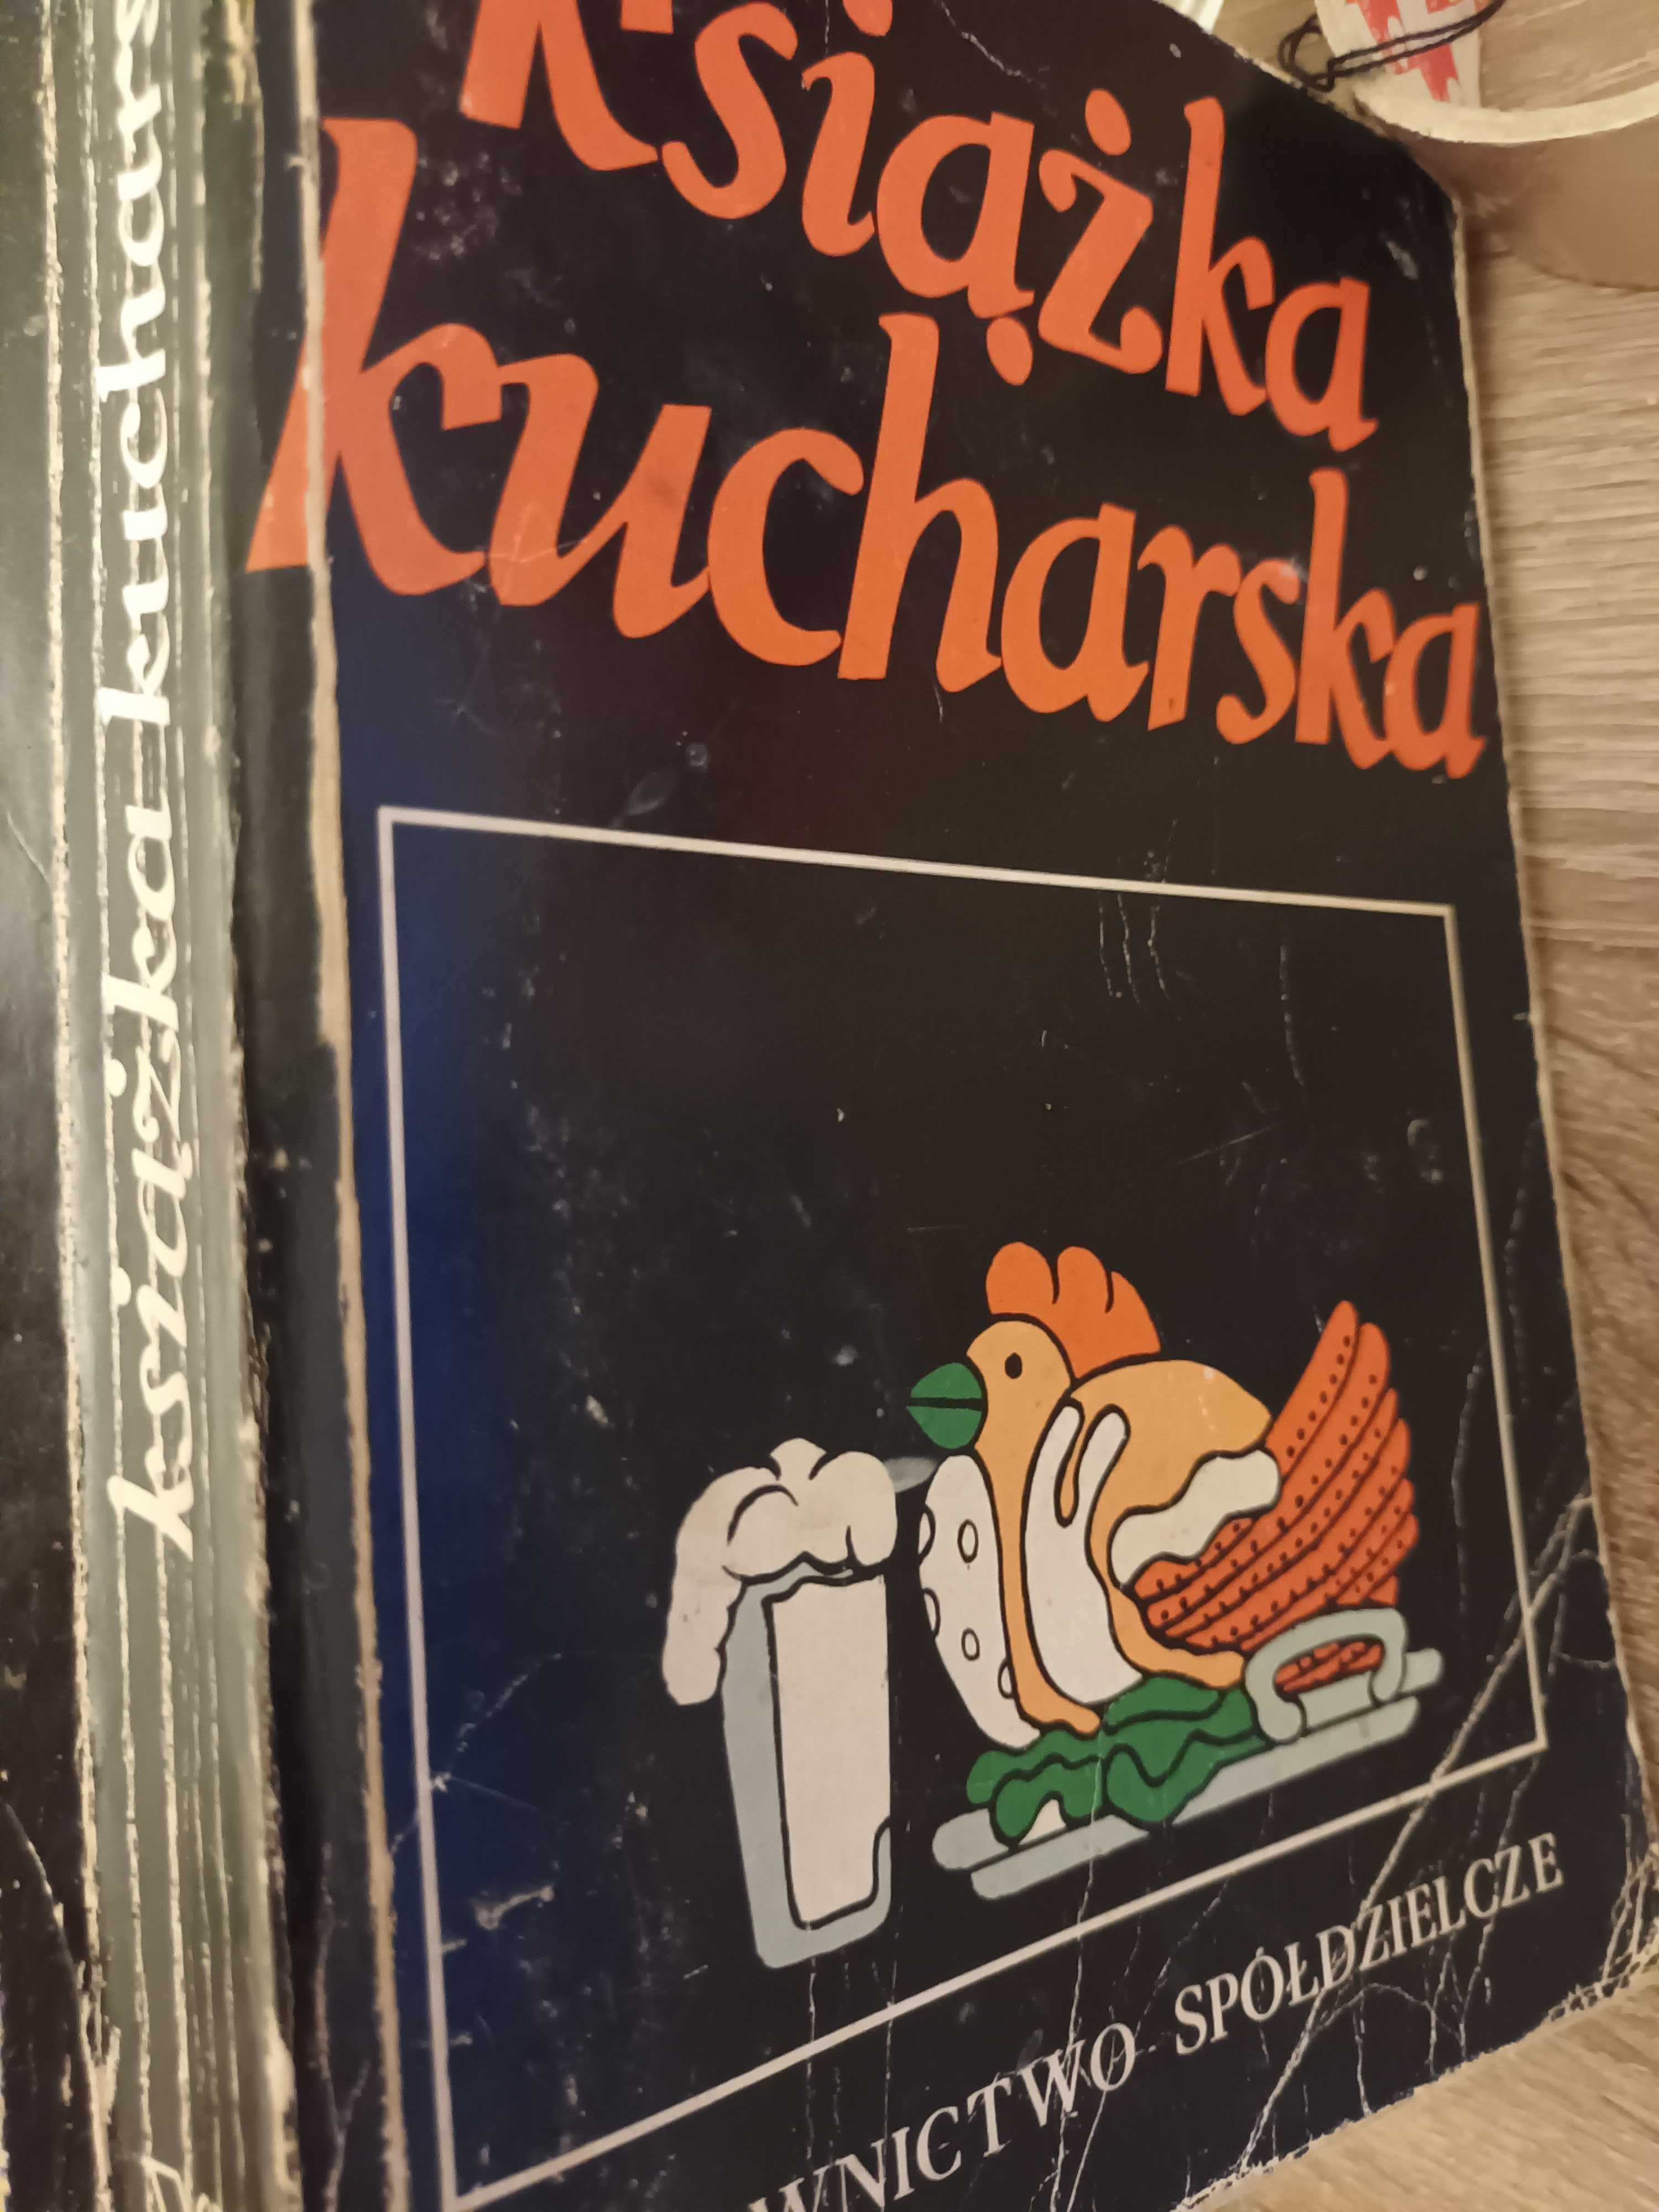 Łukasiak Książka kucharska,10ZŁ